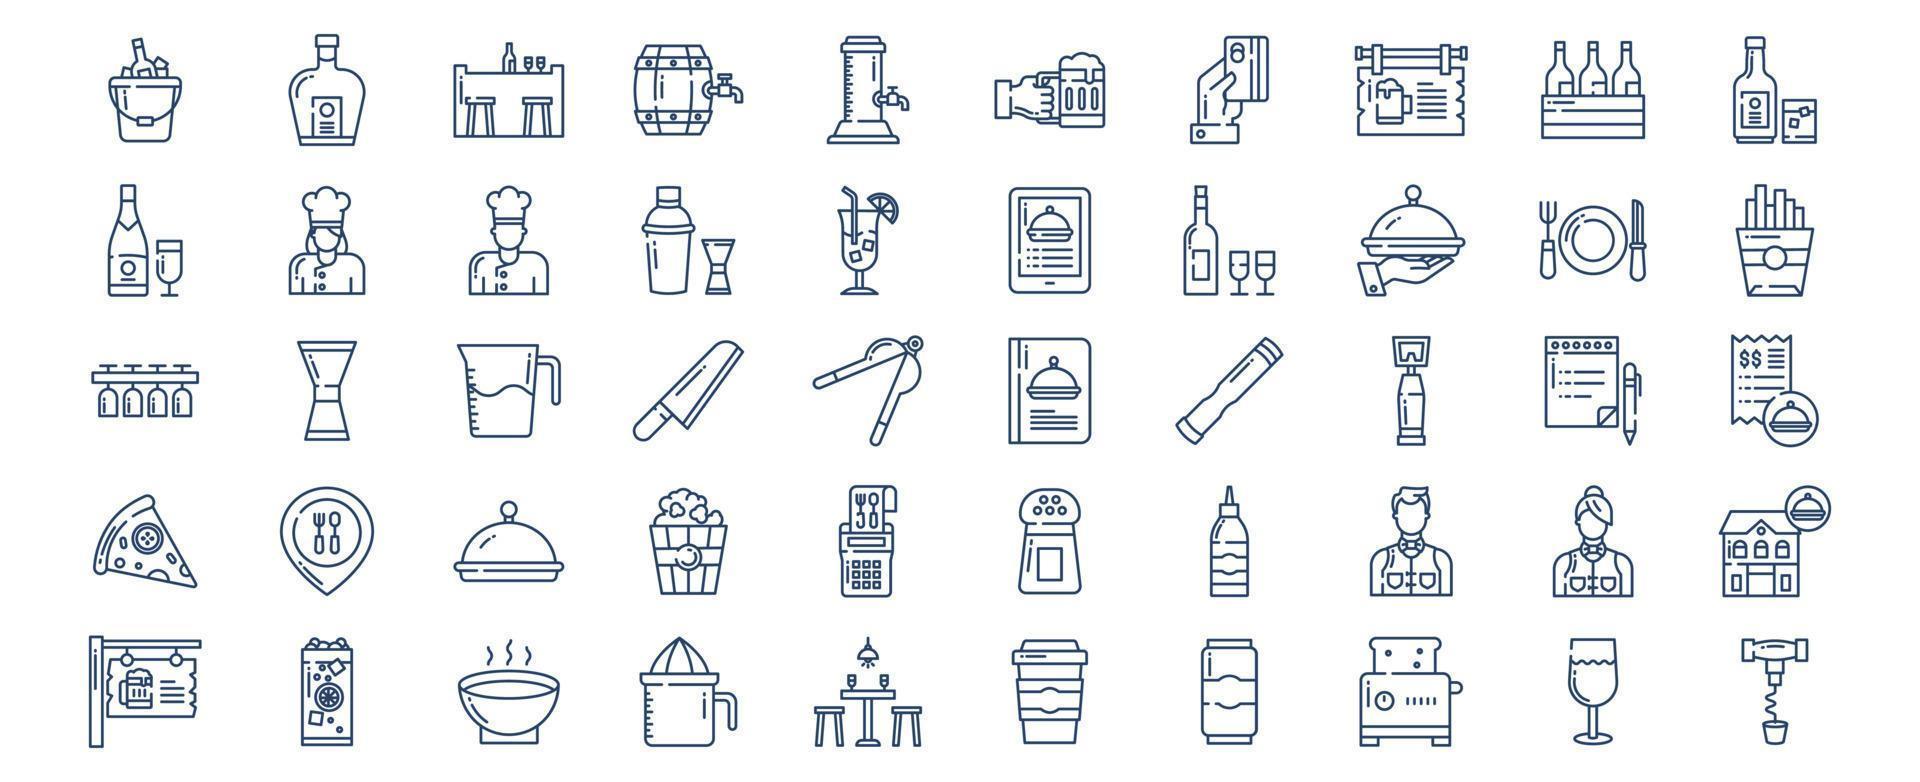 verzameling van pictogrammen verwant naar bar en restaurant, inclusief pictogrammen Leuk vinden ijs emmer, bier, en meer. vector illustraties, pixel perfect reeks